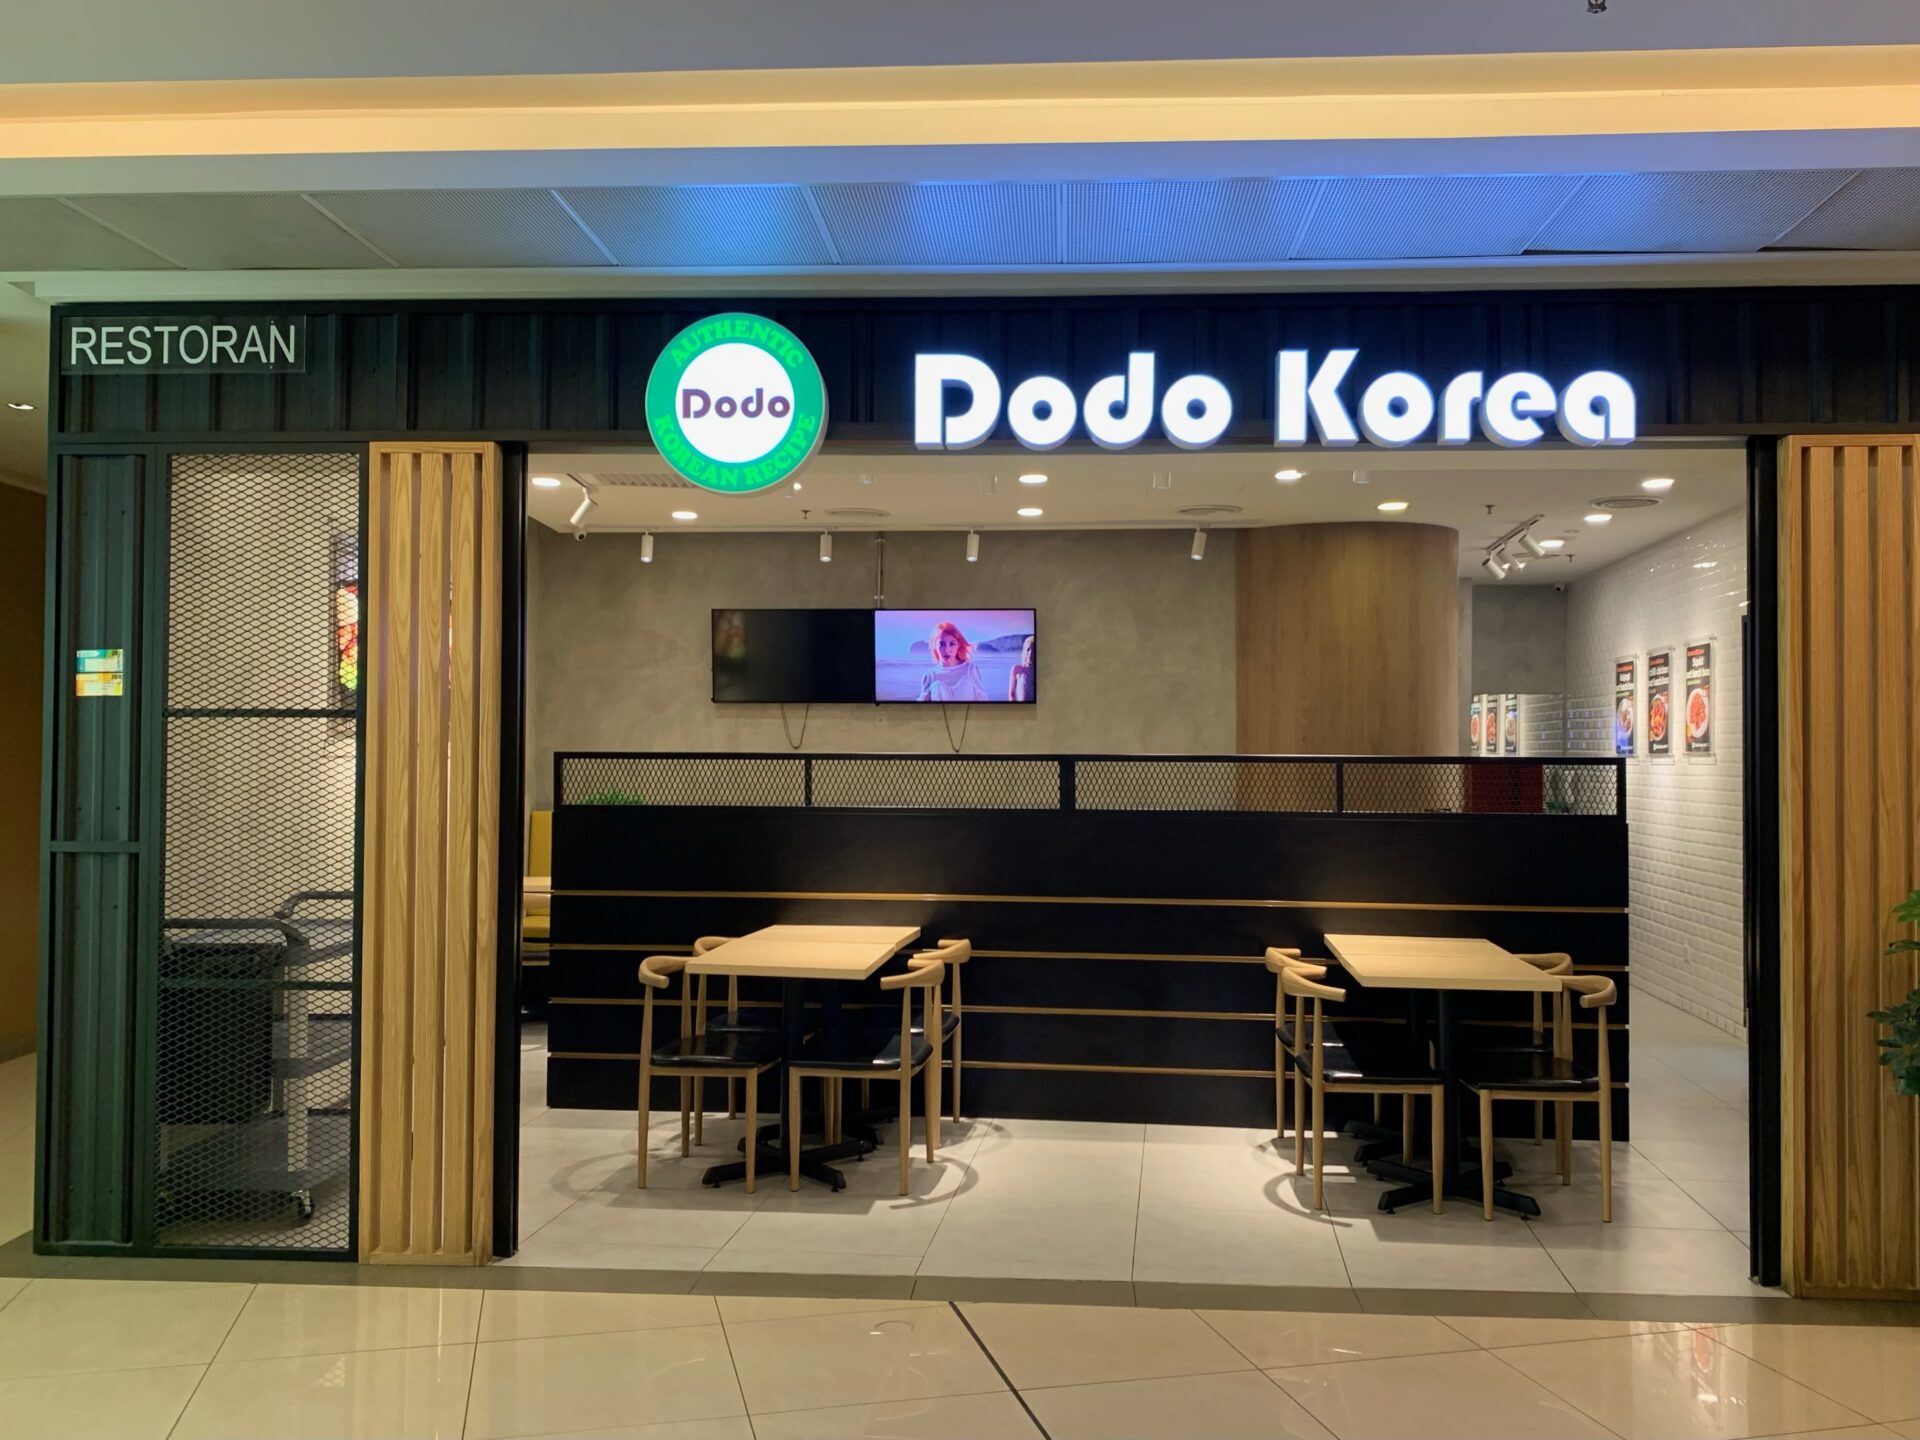 Dodo Korea - Storefront